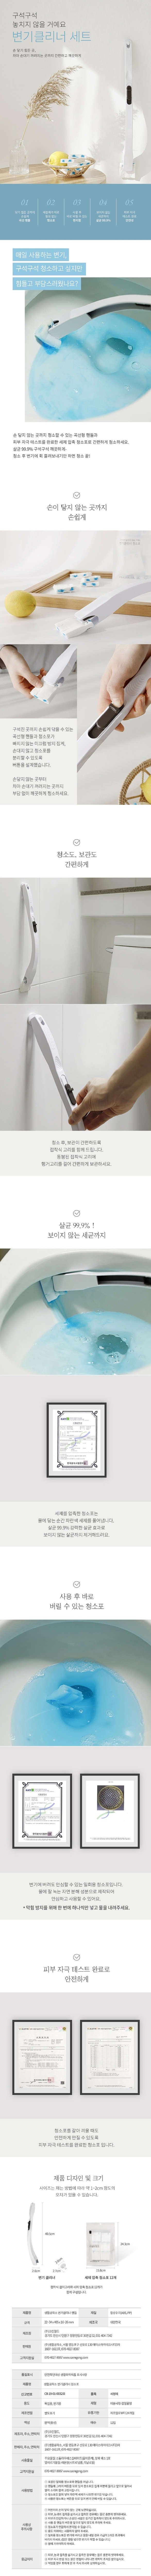 toilet_cleaner_deatail.jpg